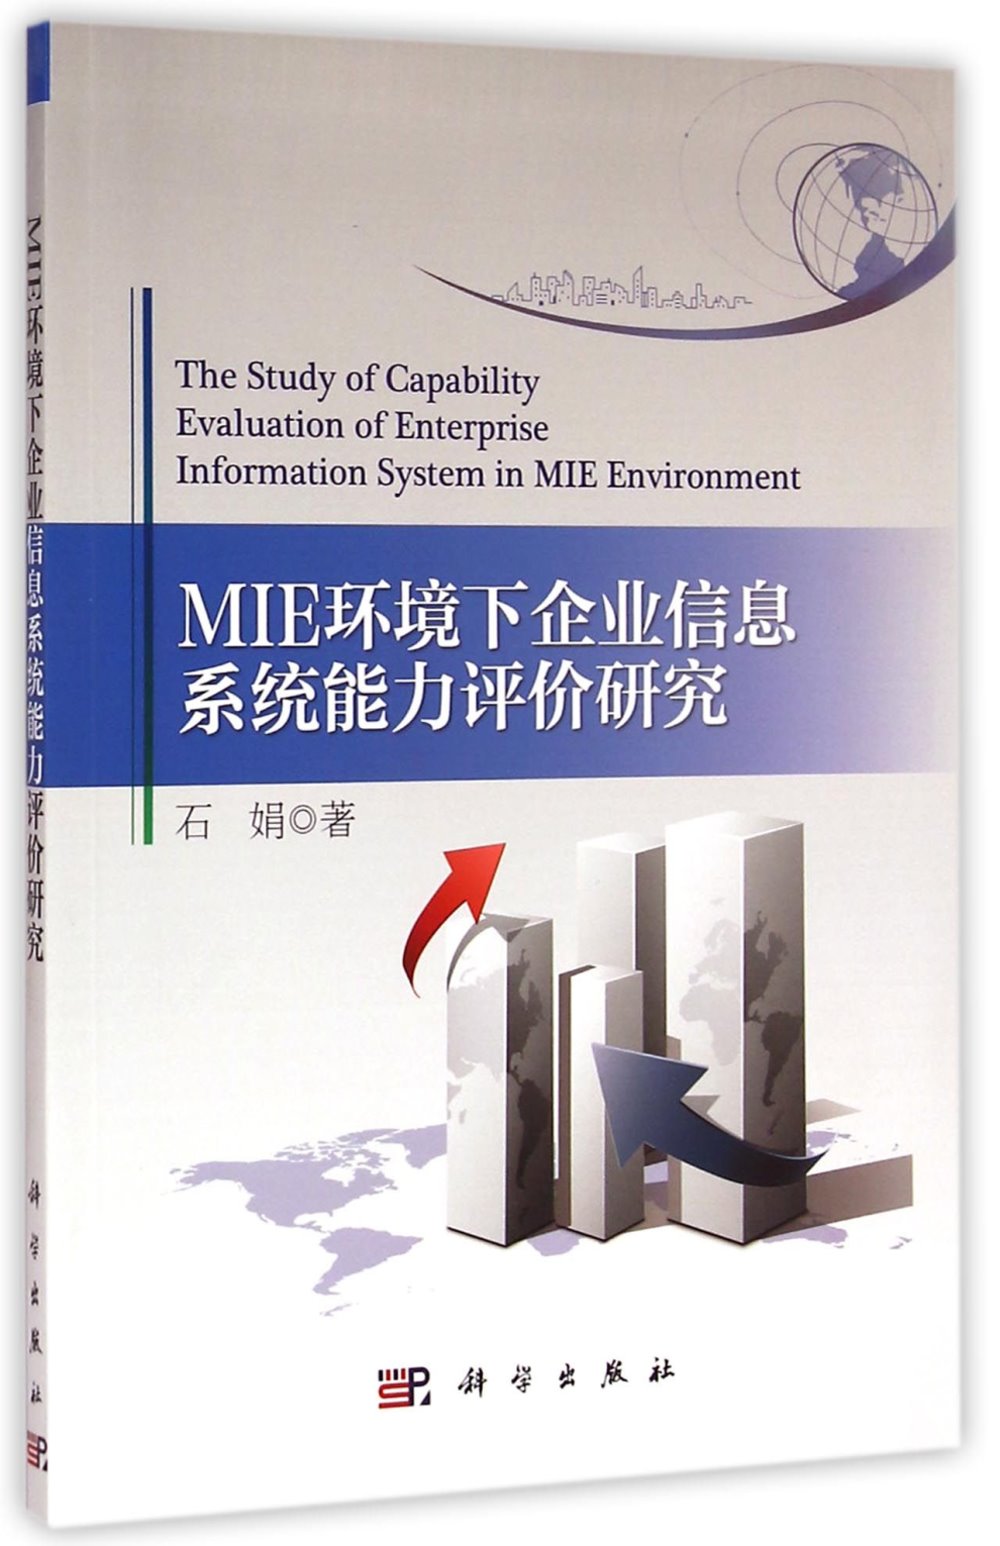 MIE環境下企業信息系統能力評價研究